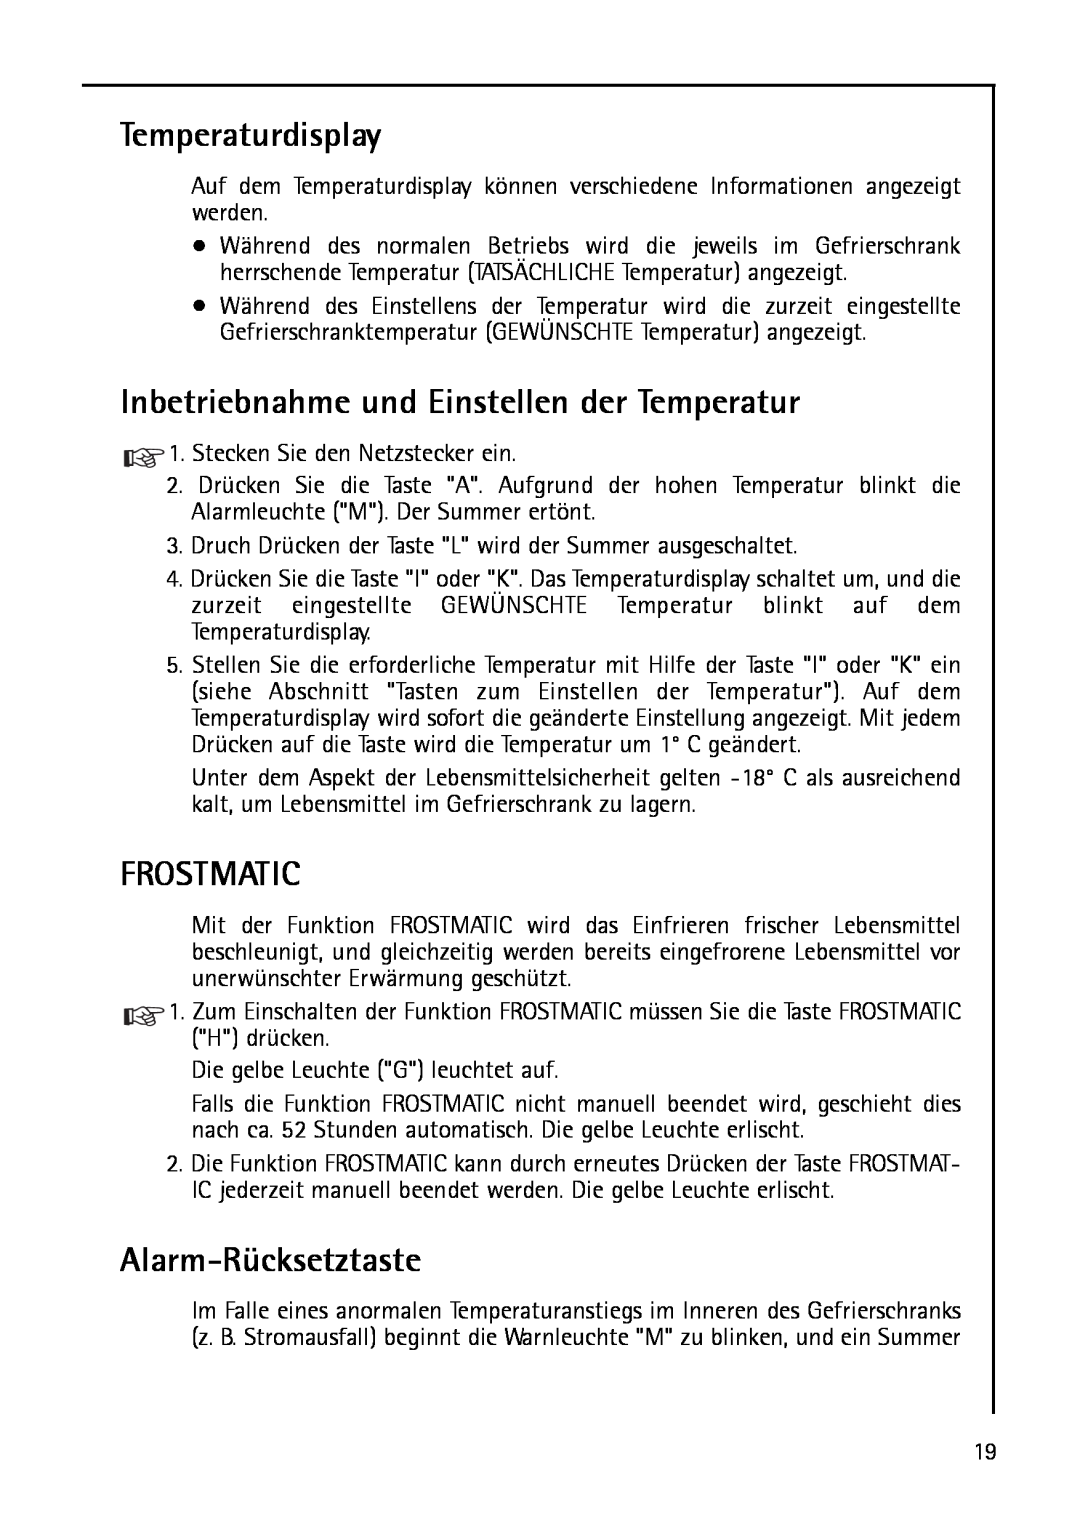 AEG S 75388 KG manual Temperaturdisplay, Frostmatic, Alarm-Rücksetztaste, Inbetriebnahme und Einstellen der Temperatur 